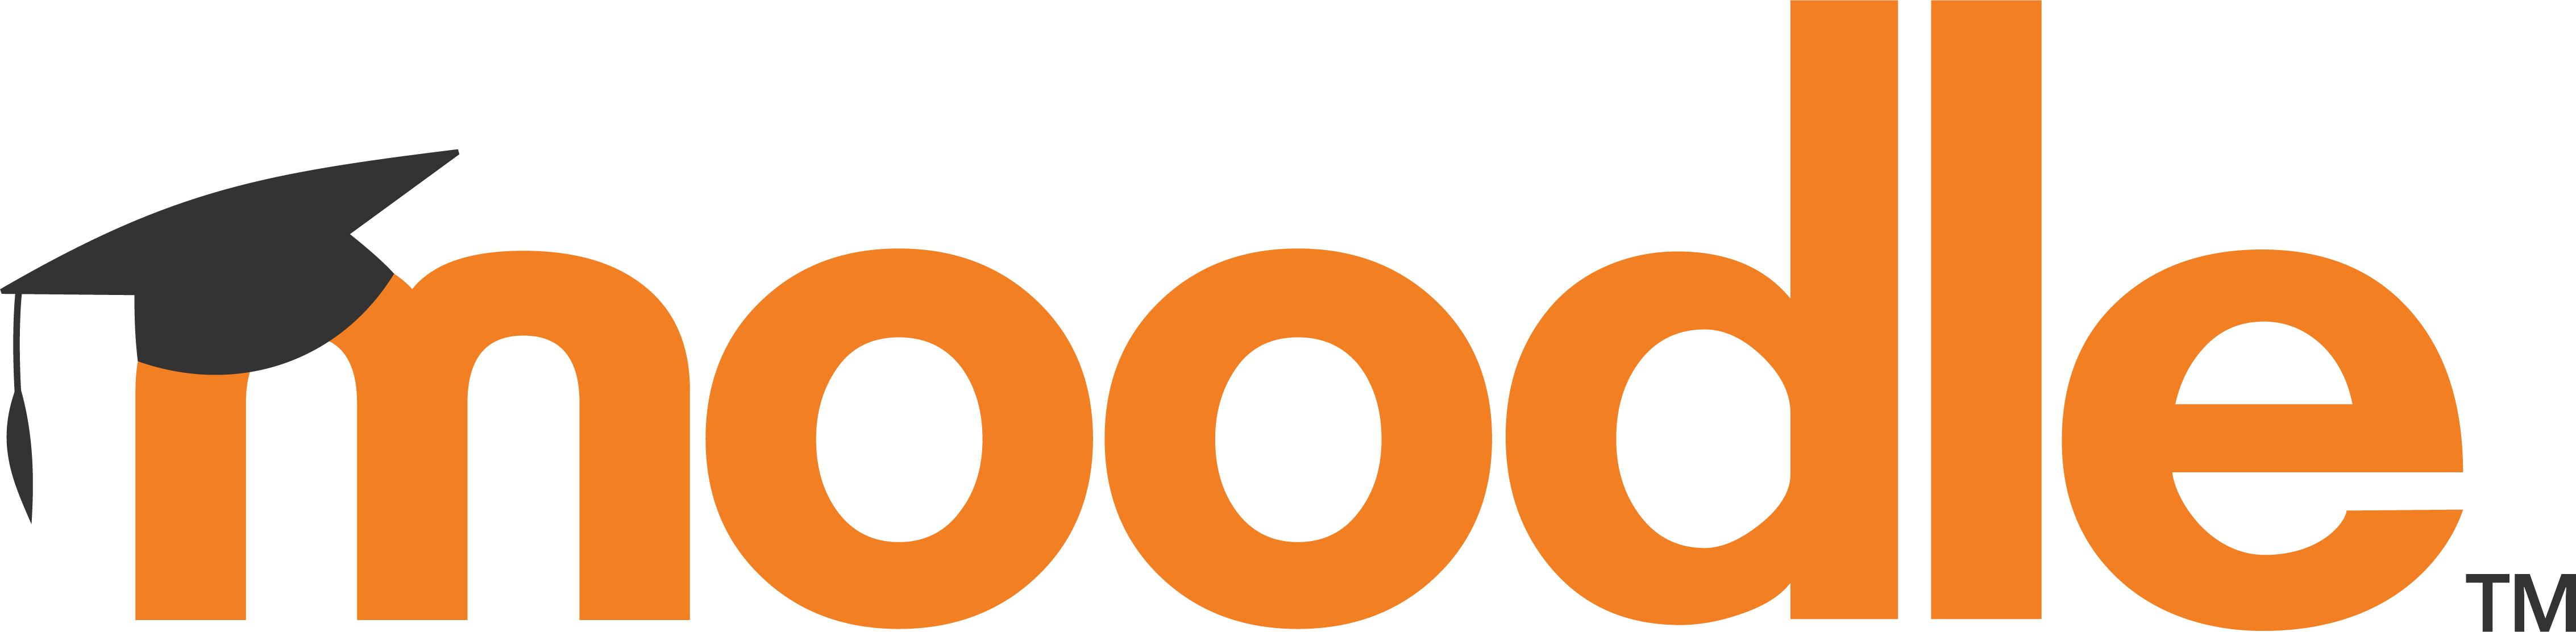 Logotipo do Moodle